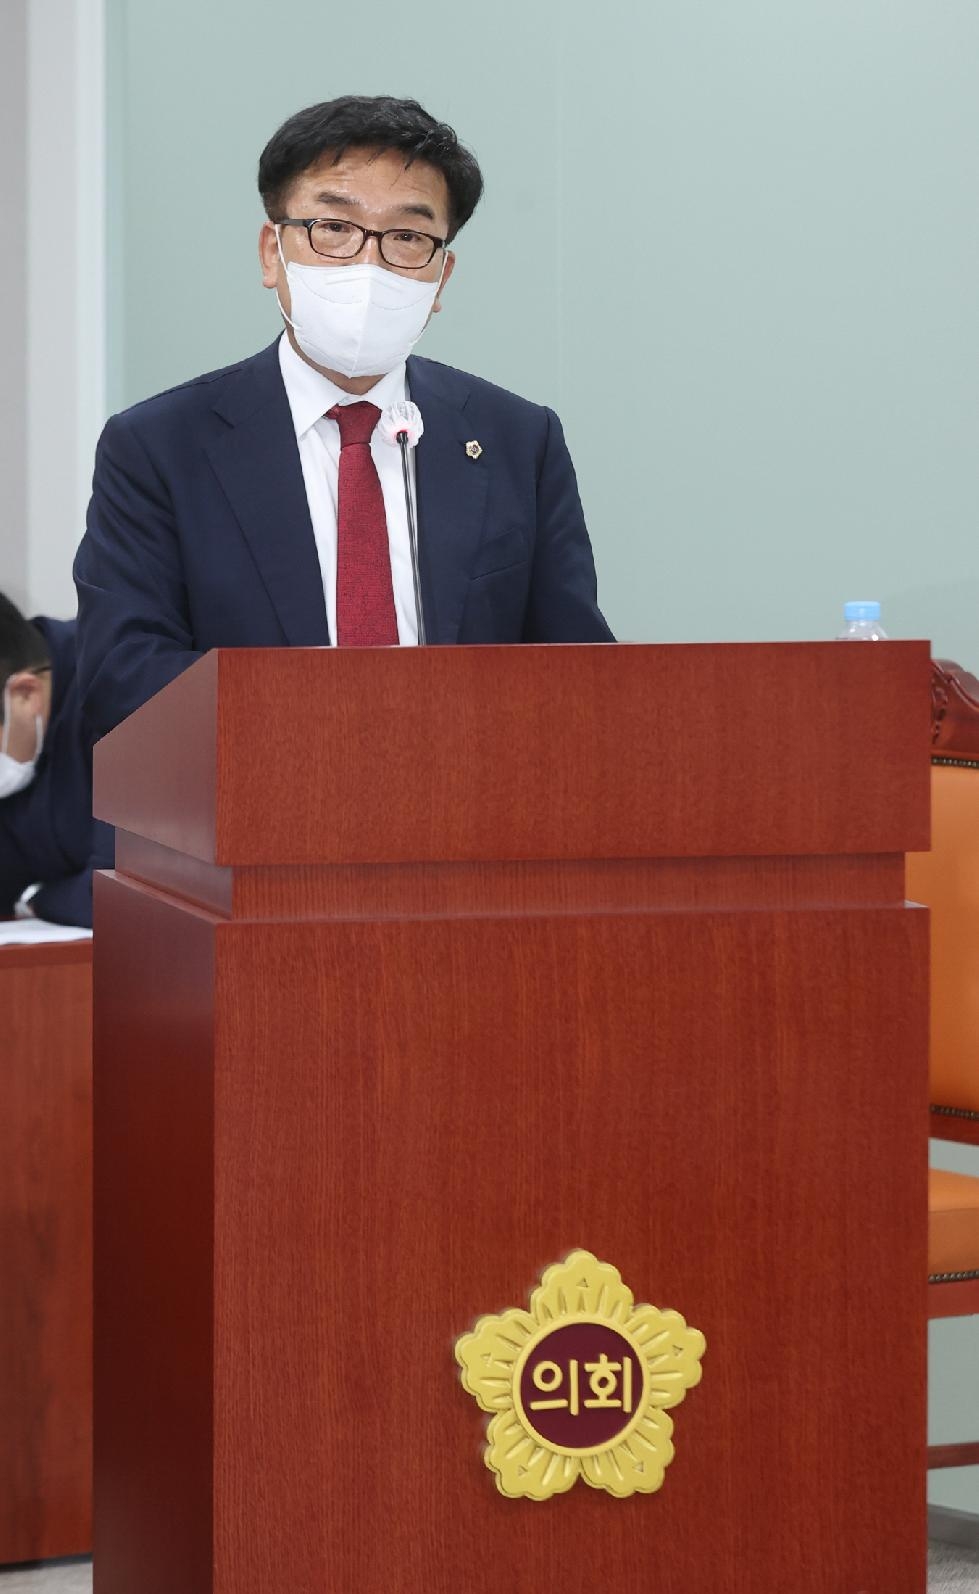 경기도의회 김철현 의원, 공정하고 청렴한 직무수행과 농어민 보호 위한 조